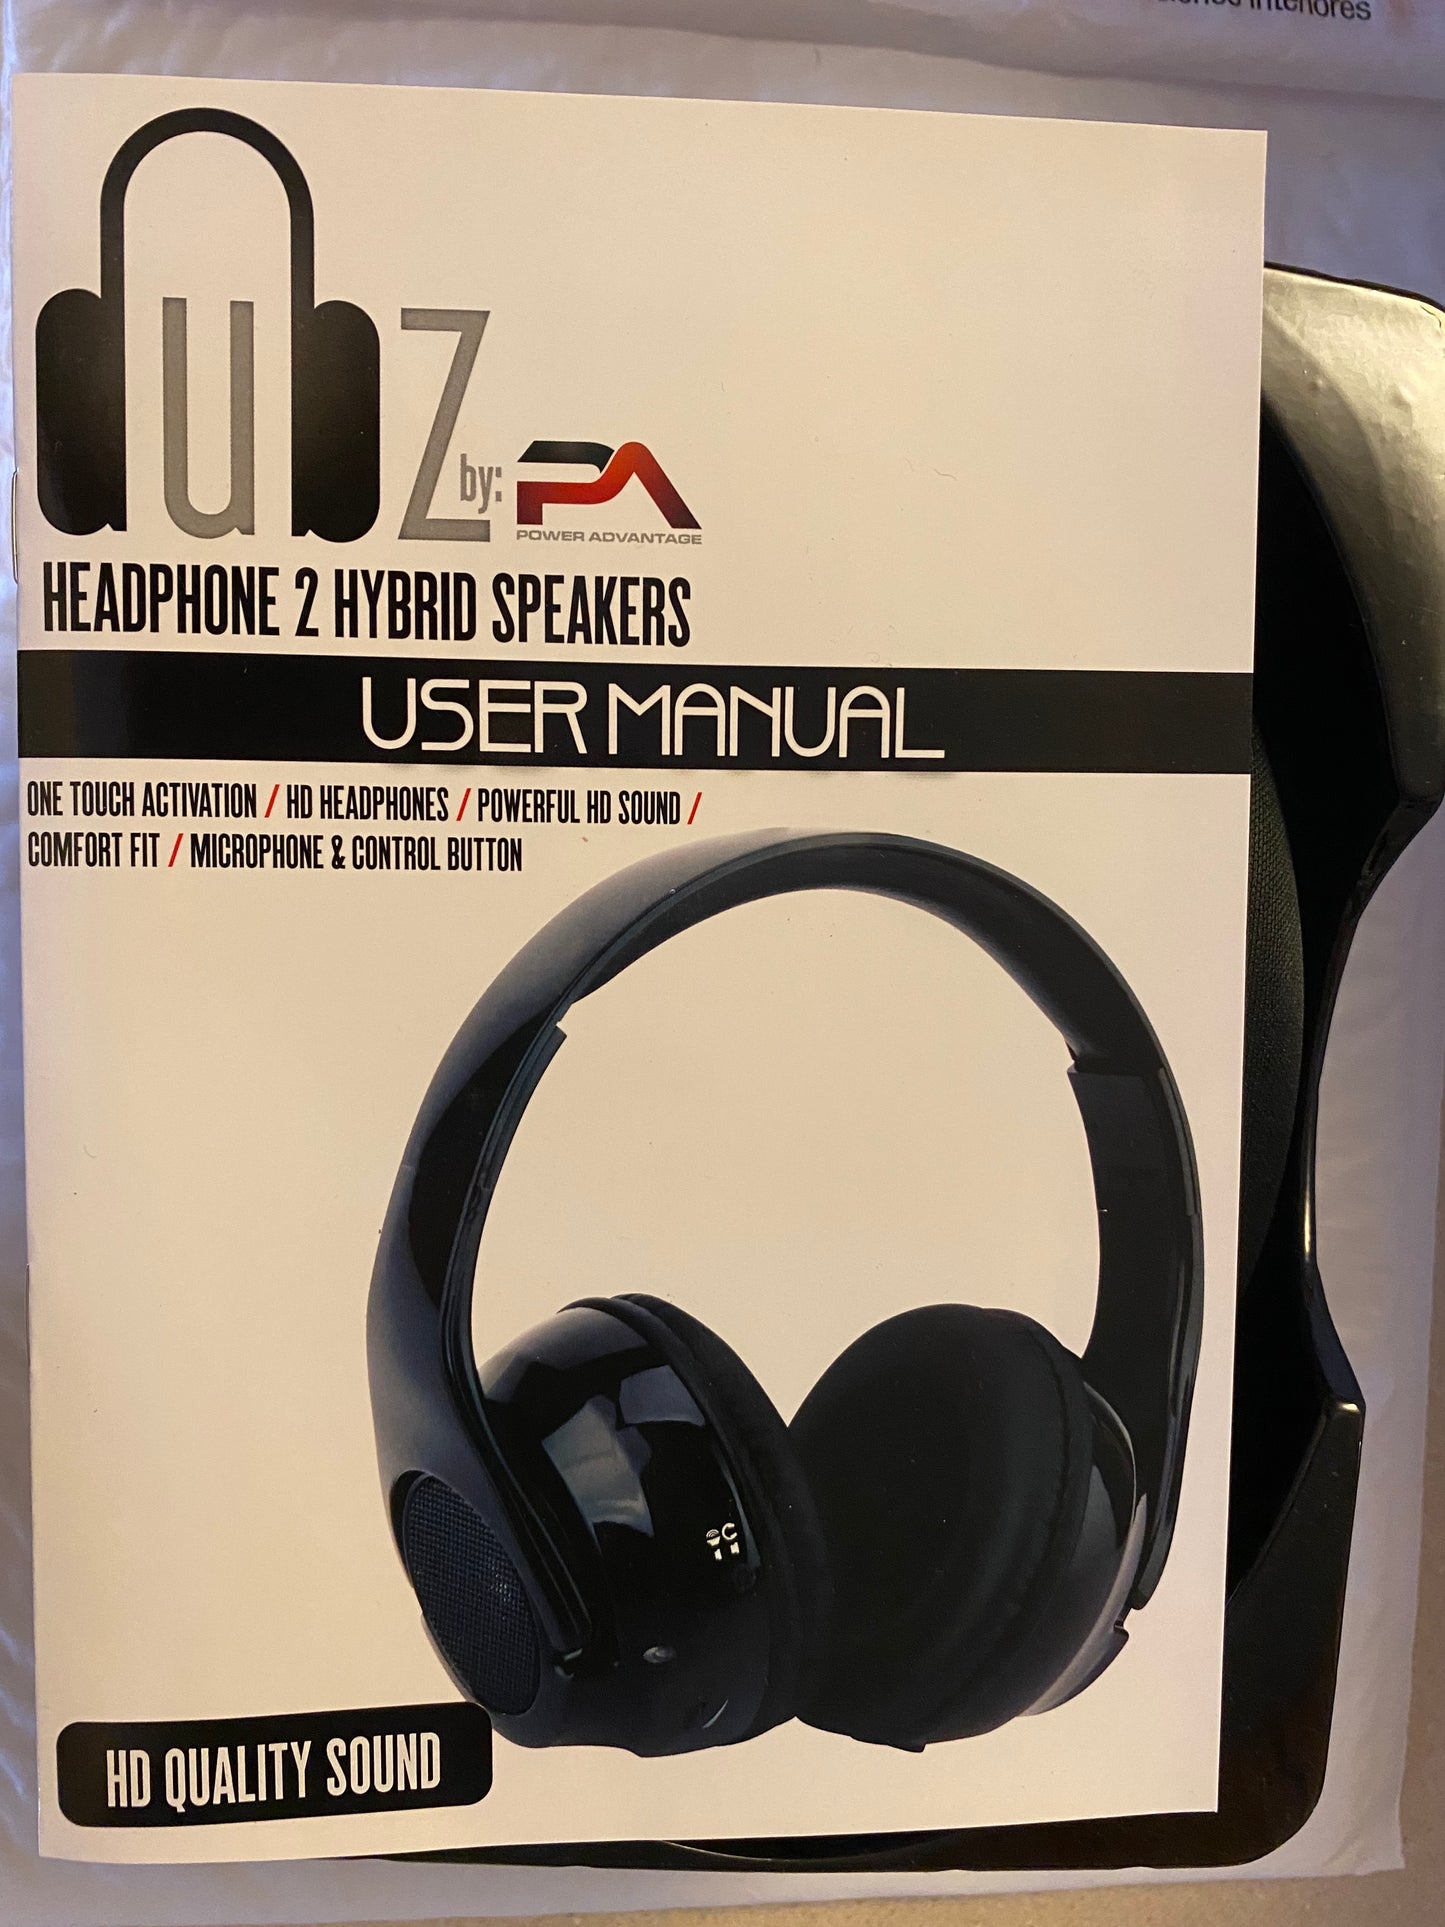 DUBZ HD Headphone